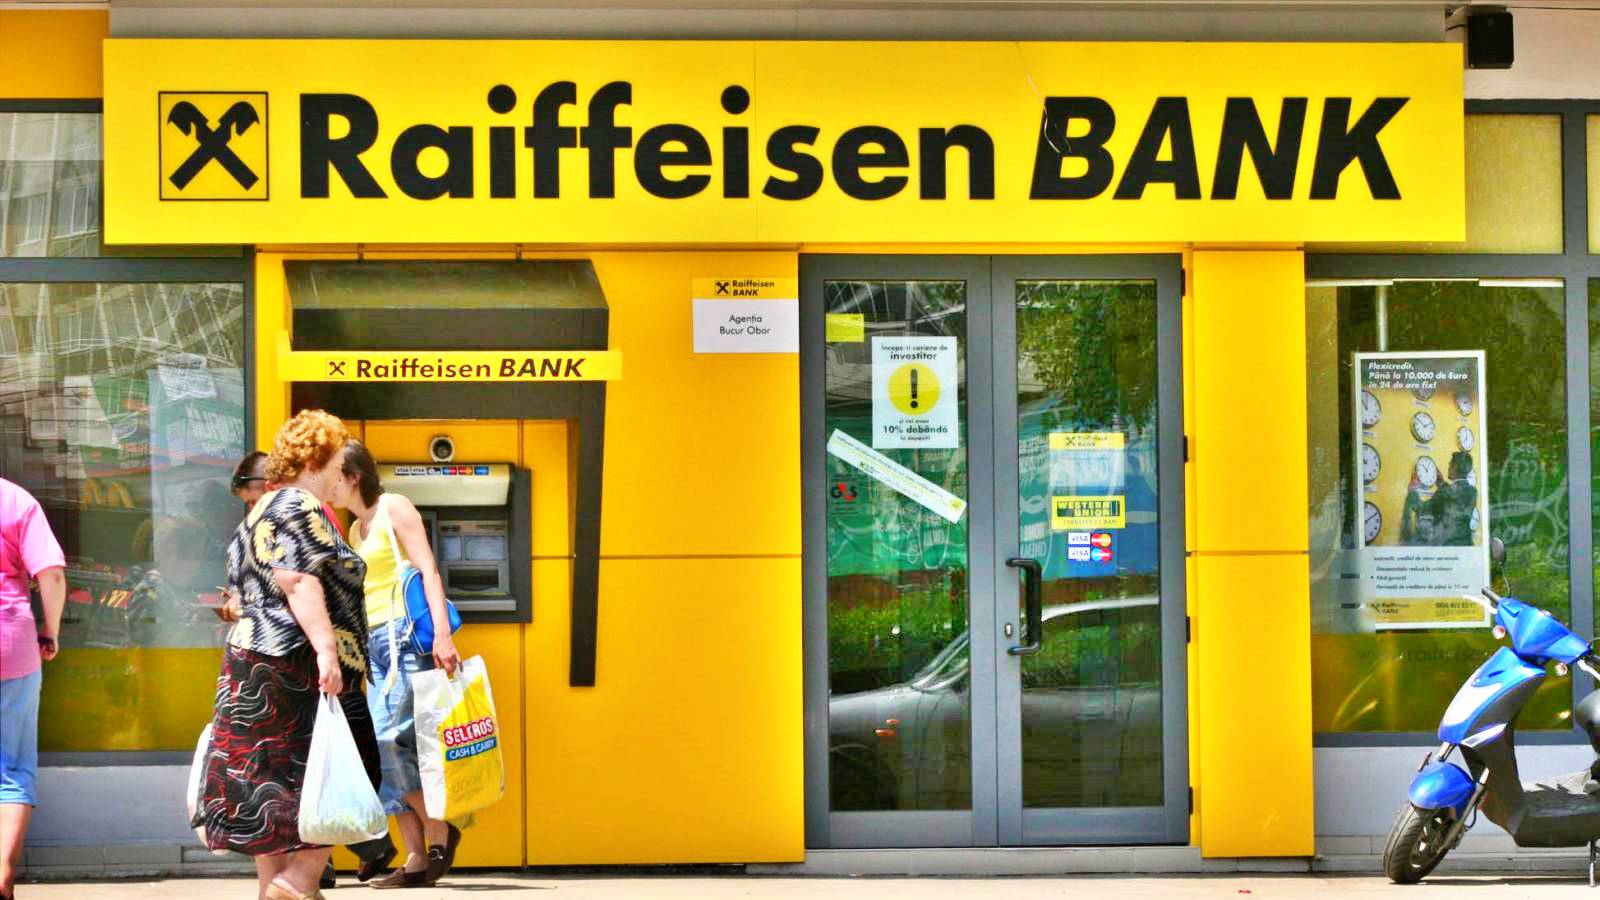 Raiffeisen Bank LAST MINUTE-meddelande riktar sig till alla rumänska kunder